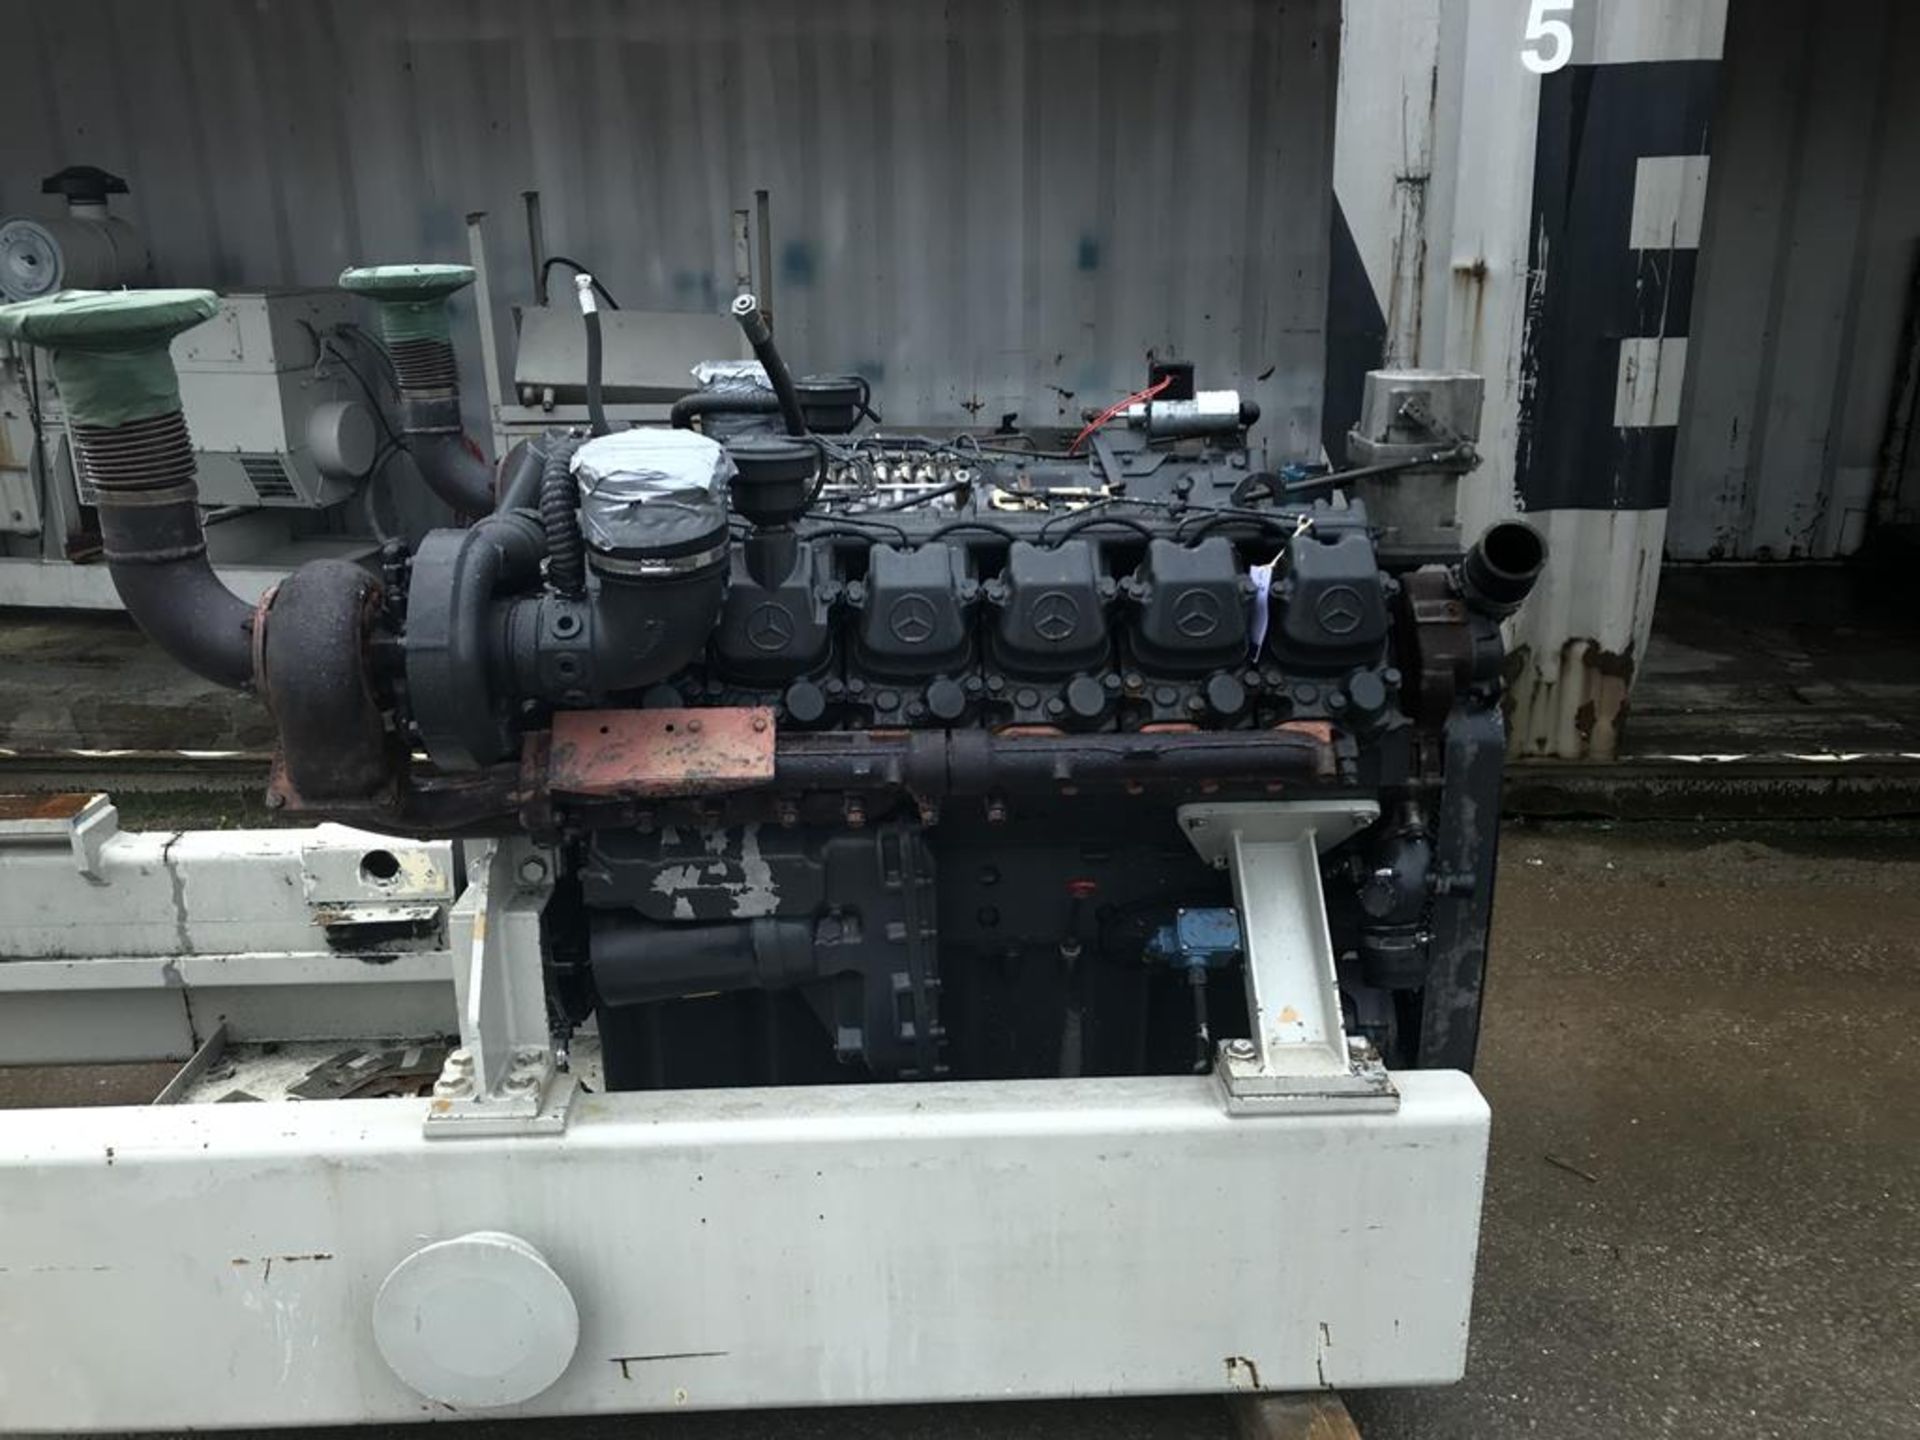 Mercedes V12 Diesel Engine - Image 2 of 3